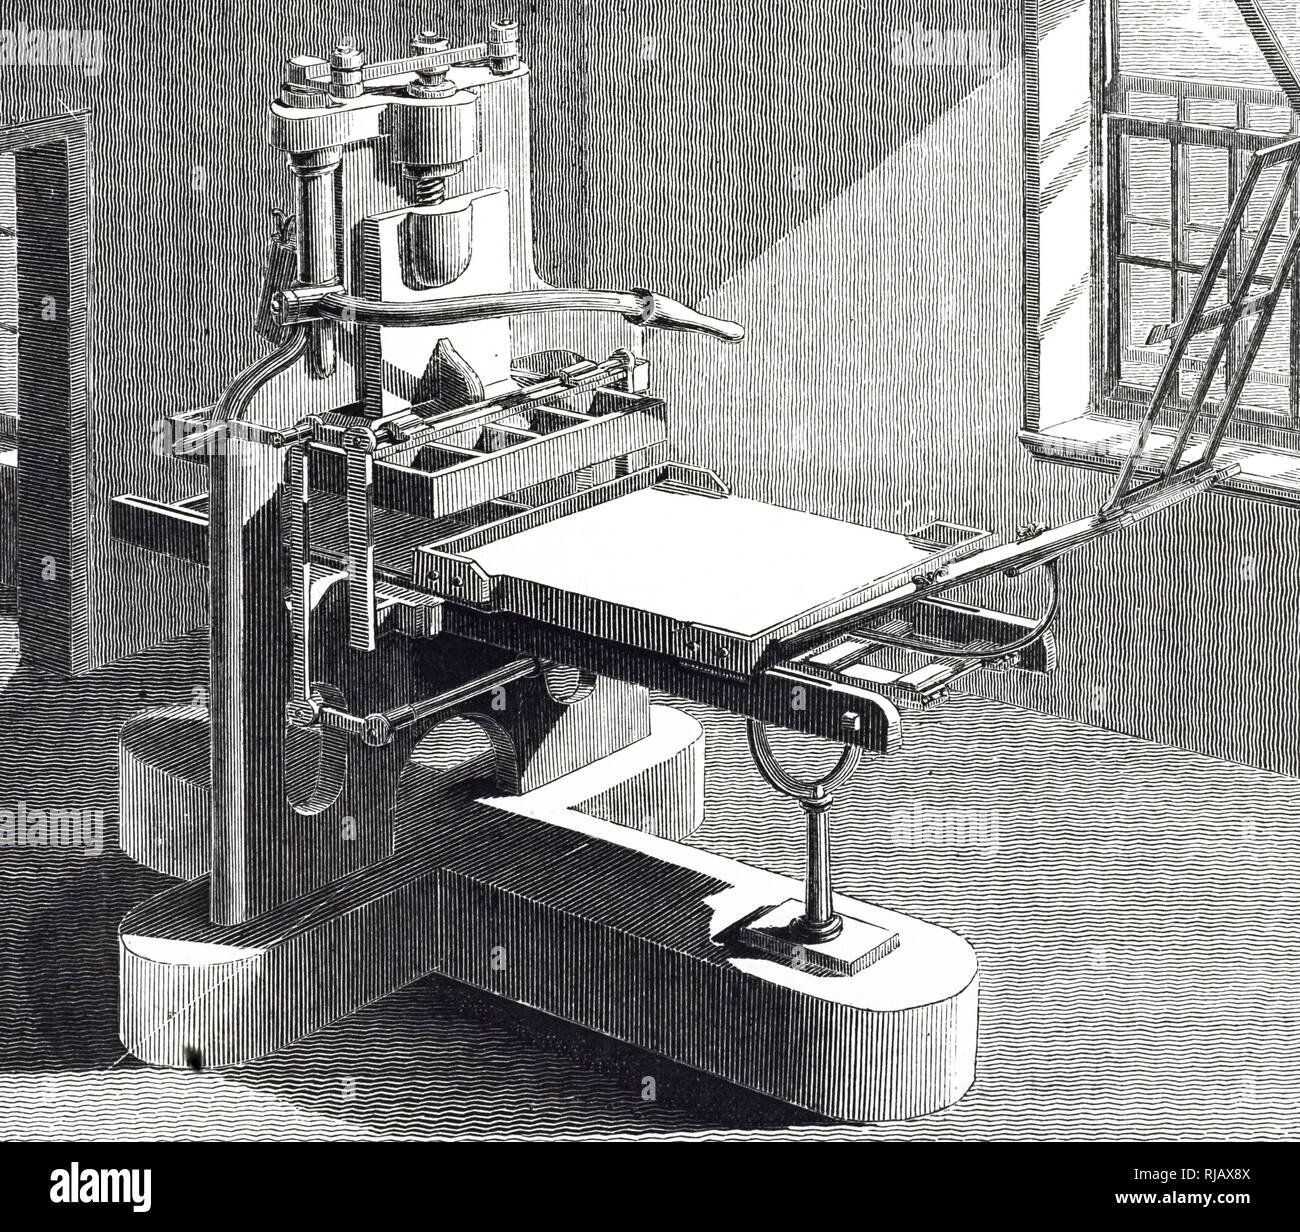 Ein kupferstich mit der Darstellung eines Stanhope drücken Sie: eine verbesserte Form einer Standard Druckmaschine geplant durch Charles Stanhope, 3rd Earl Stanhope. Charles Stanhope, 3rd Earl Stanhope (1753-1816) ein britischer Staatsmann und Wissenschaftler. Vom 19. Jahrhundert Stockfoto